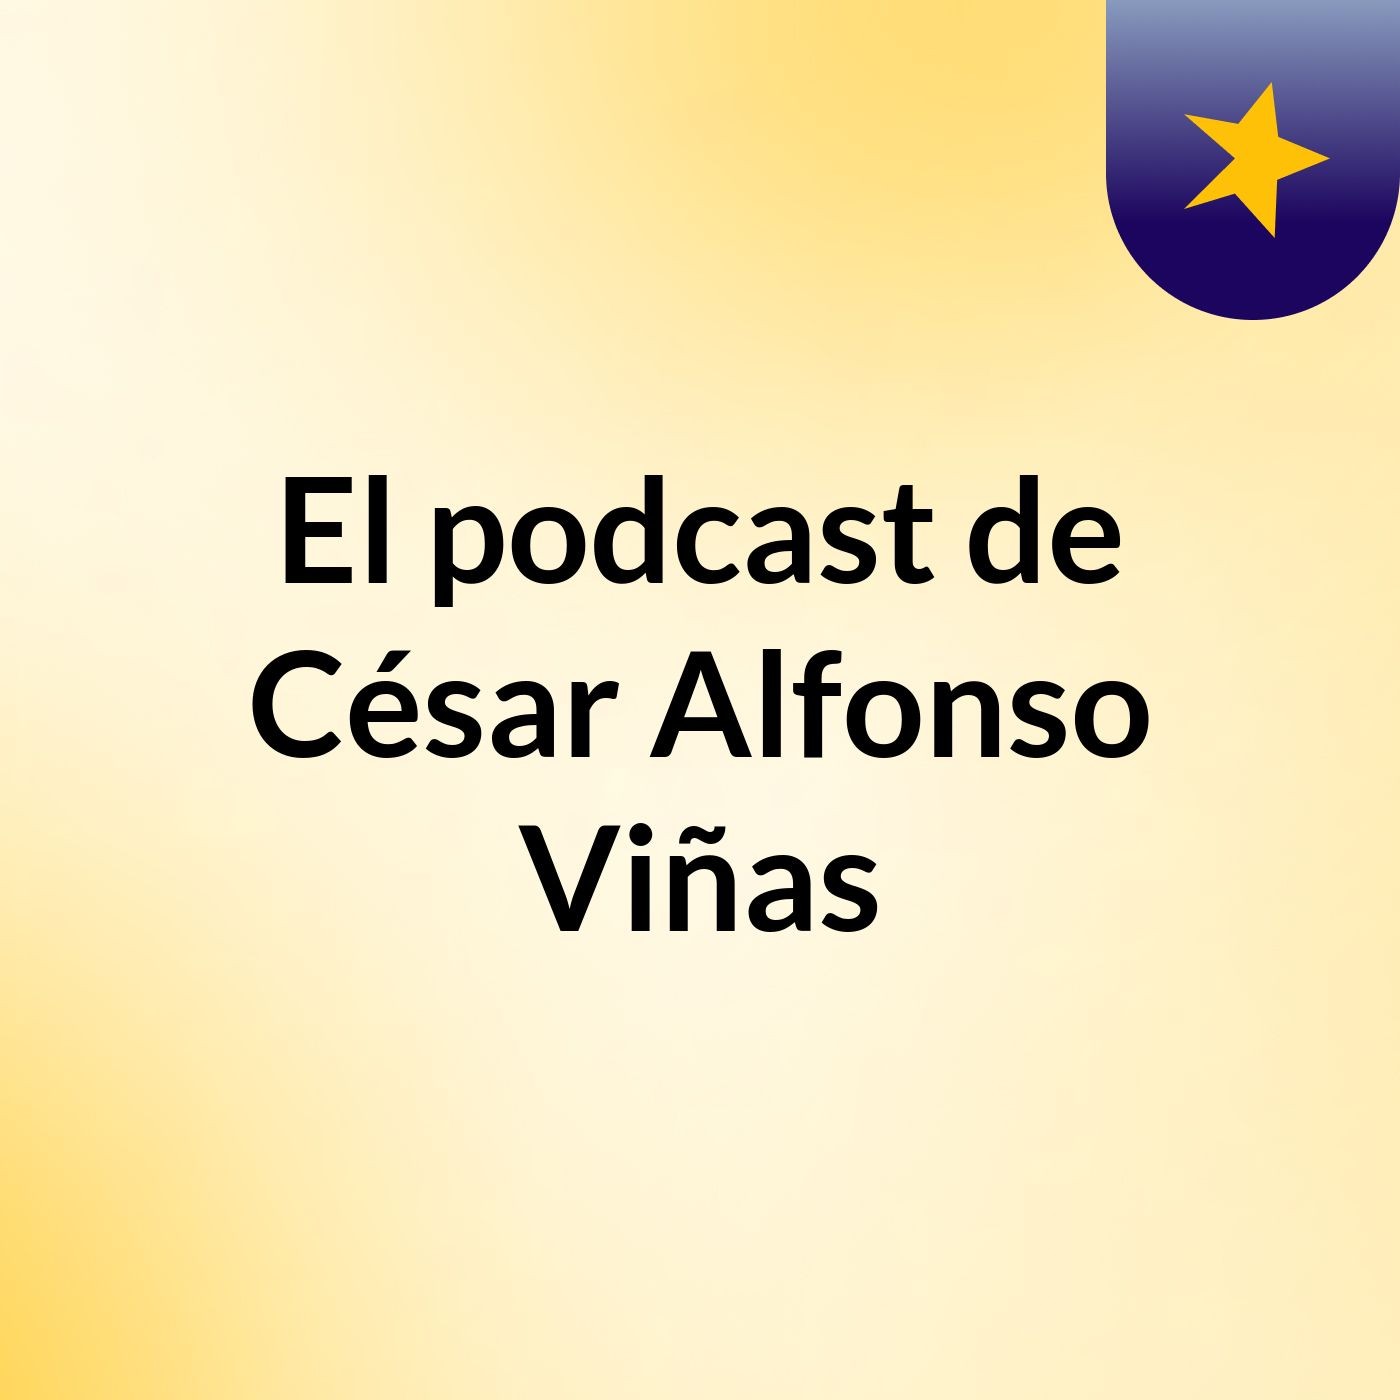 El podcast de César Alfonso Viñas